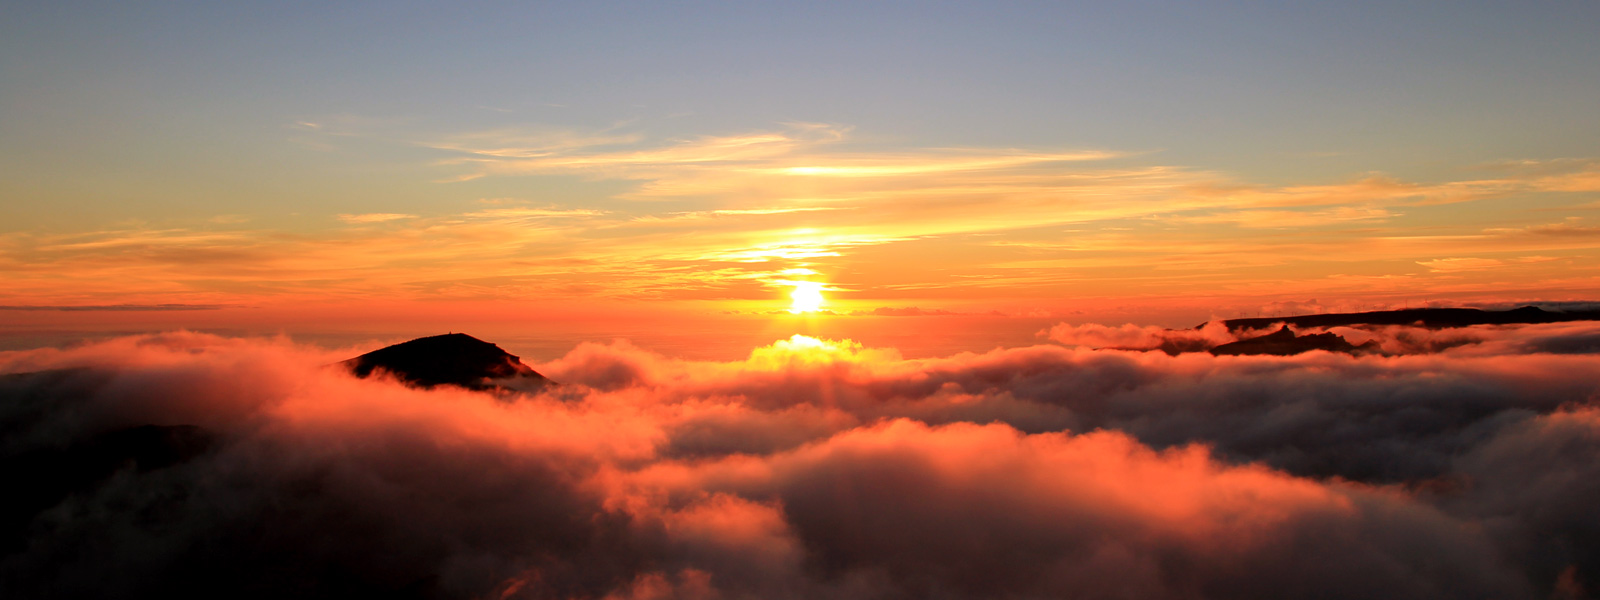 Pico do Areeiro - Pôr do Sol